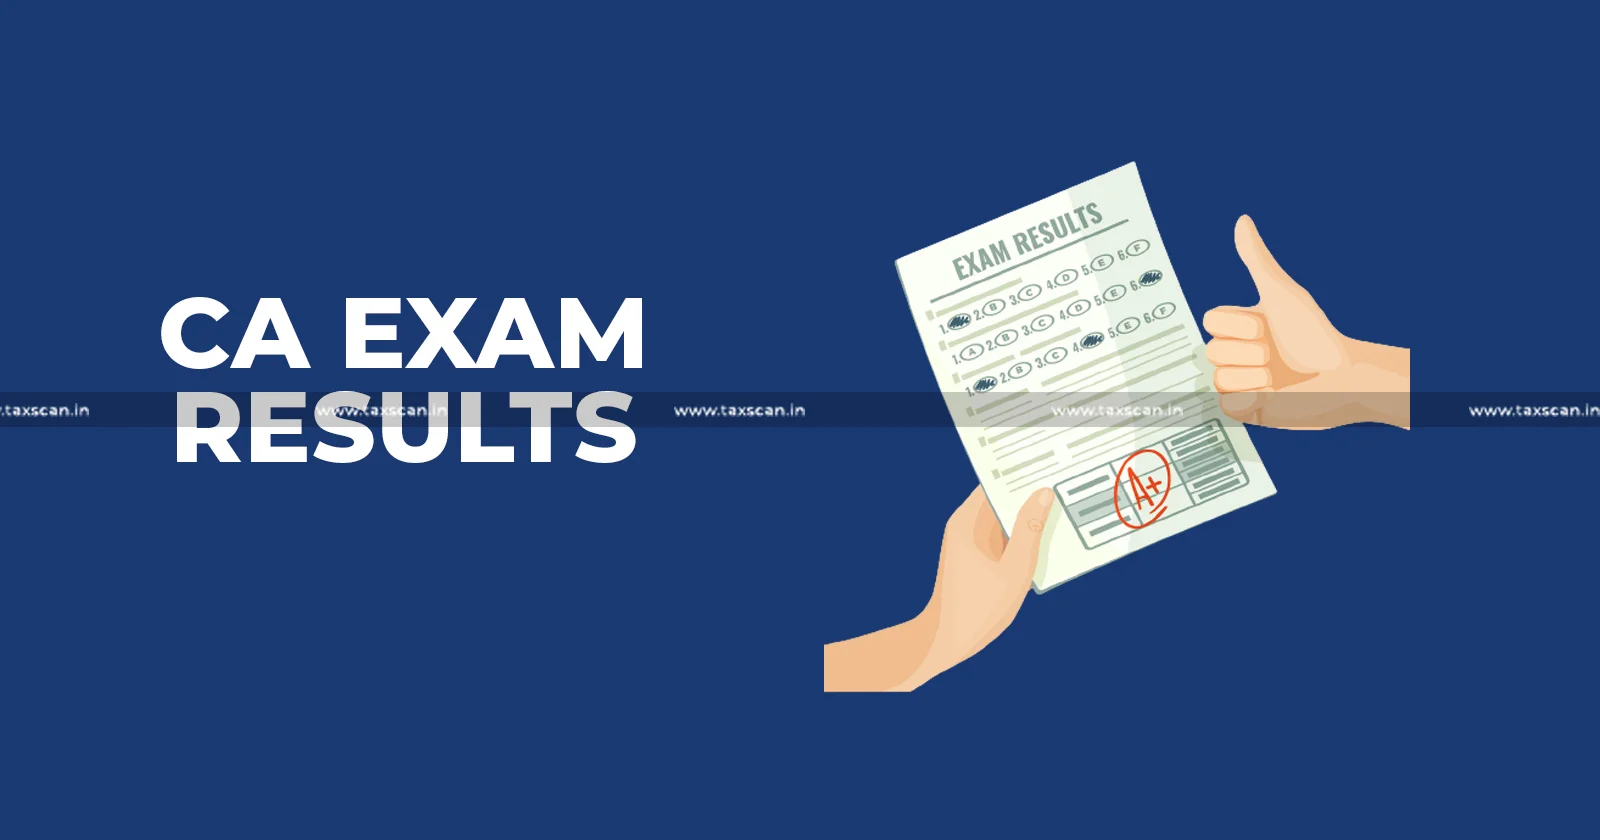 CA Final Examination Results - CA Inter Examination Results - CA - Check Your Results - CA Final and Inter Examination Results - taxscan